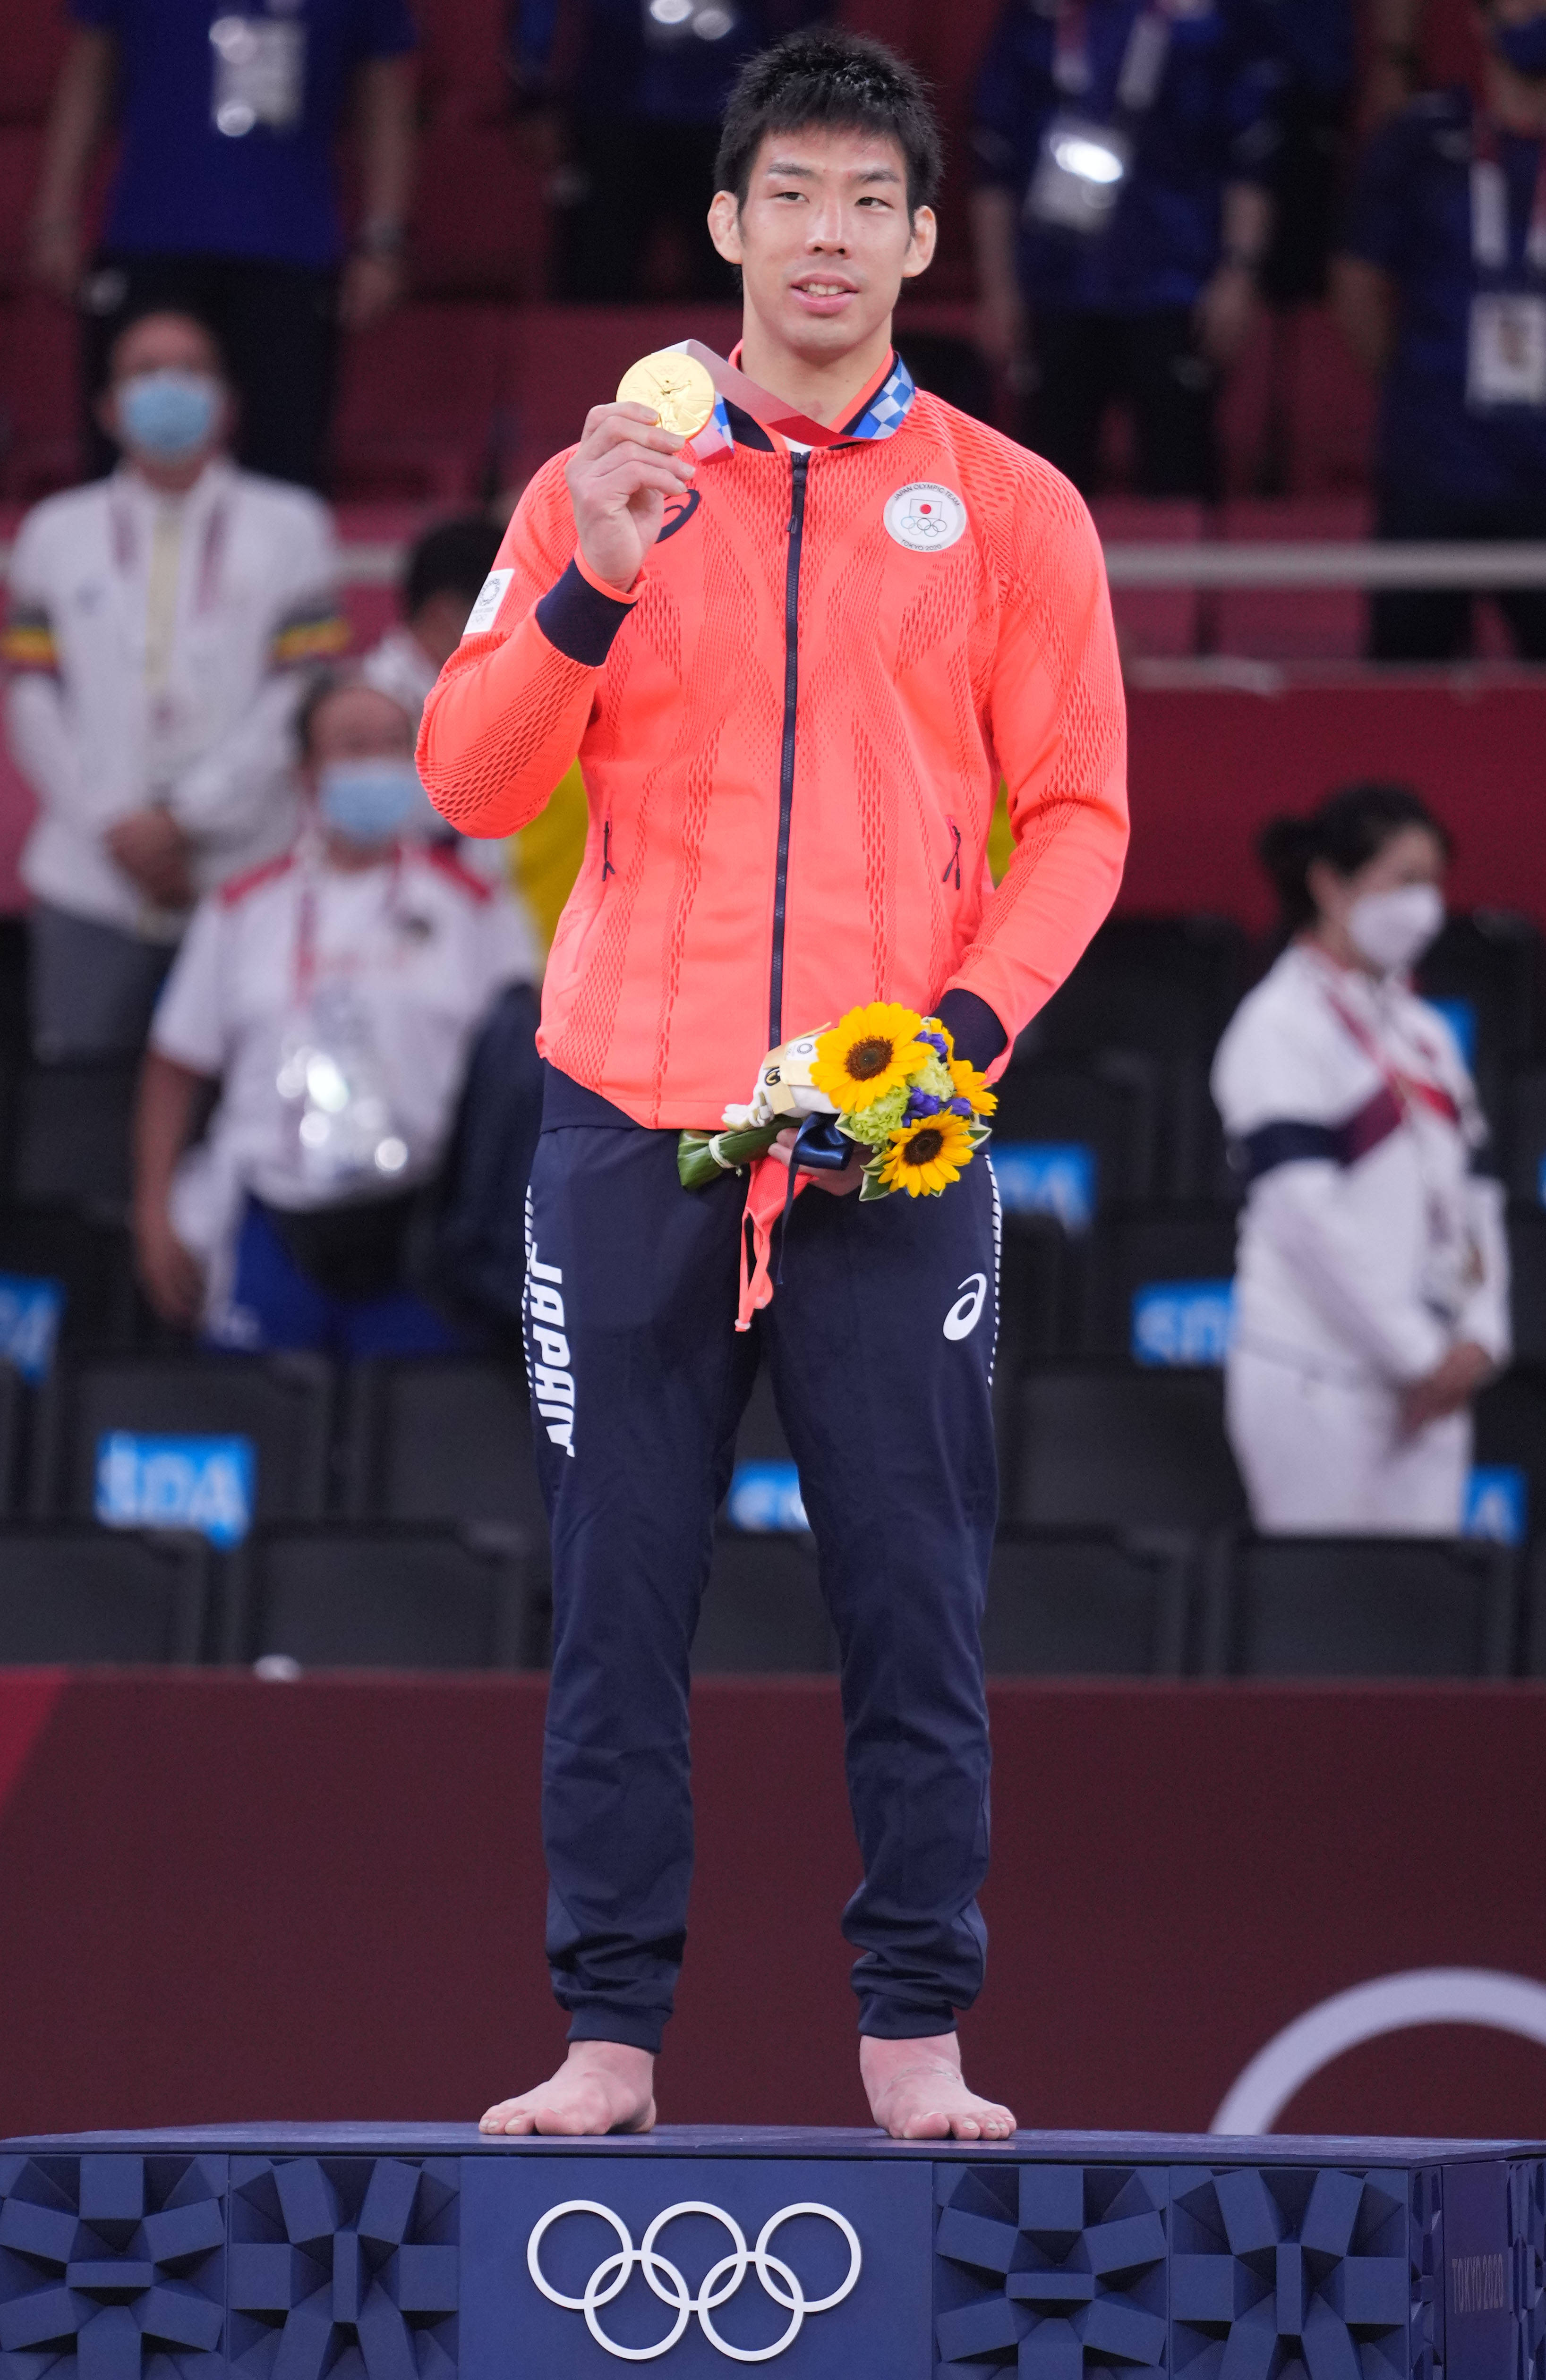 柔道——日本选手永濑贵规夺得男子81公斤级冠军